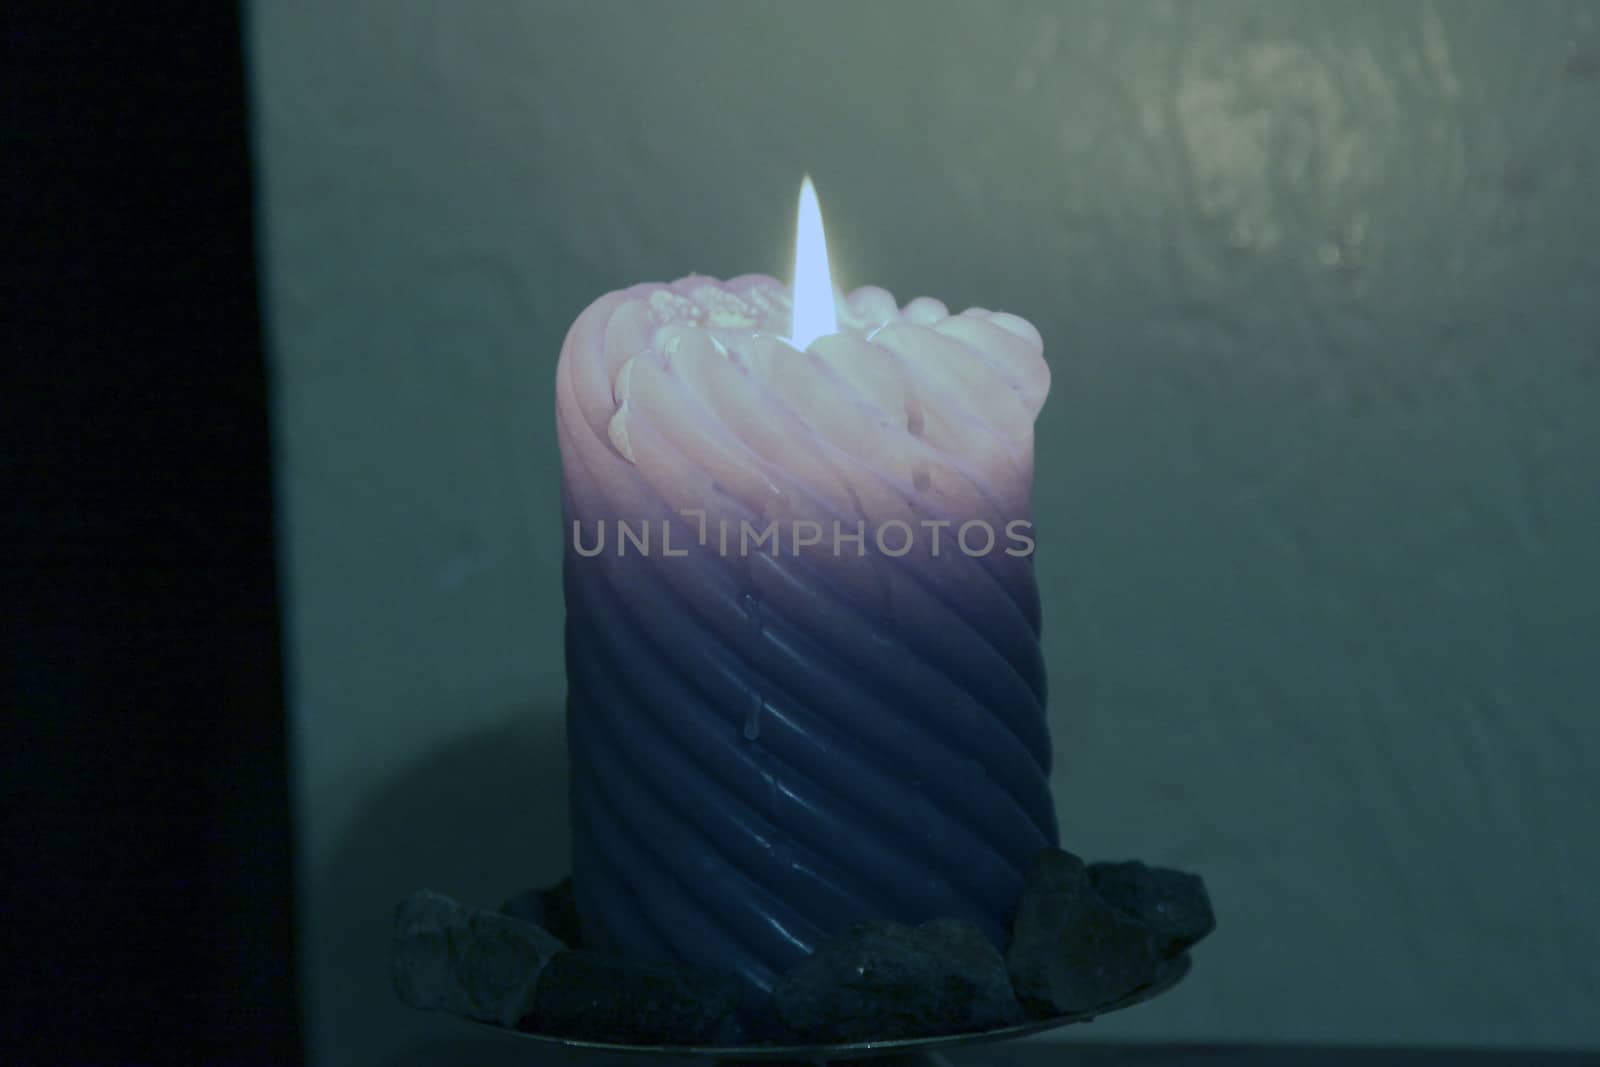 Blue candle burning